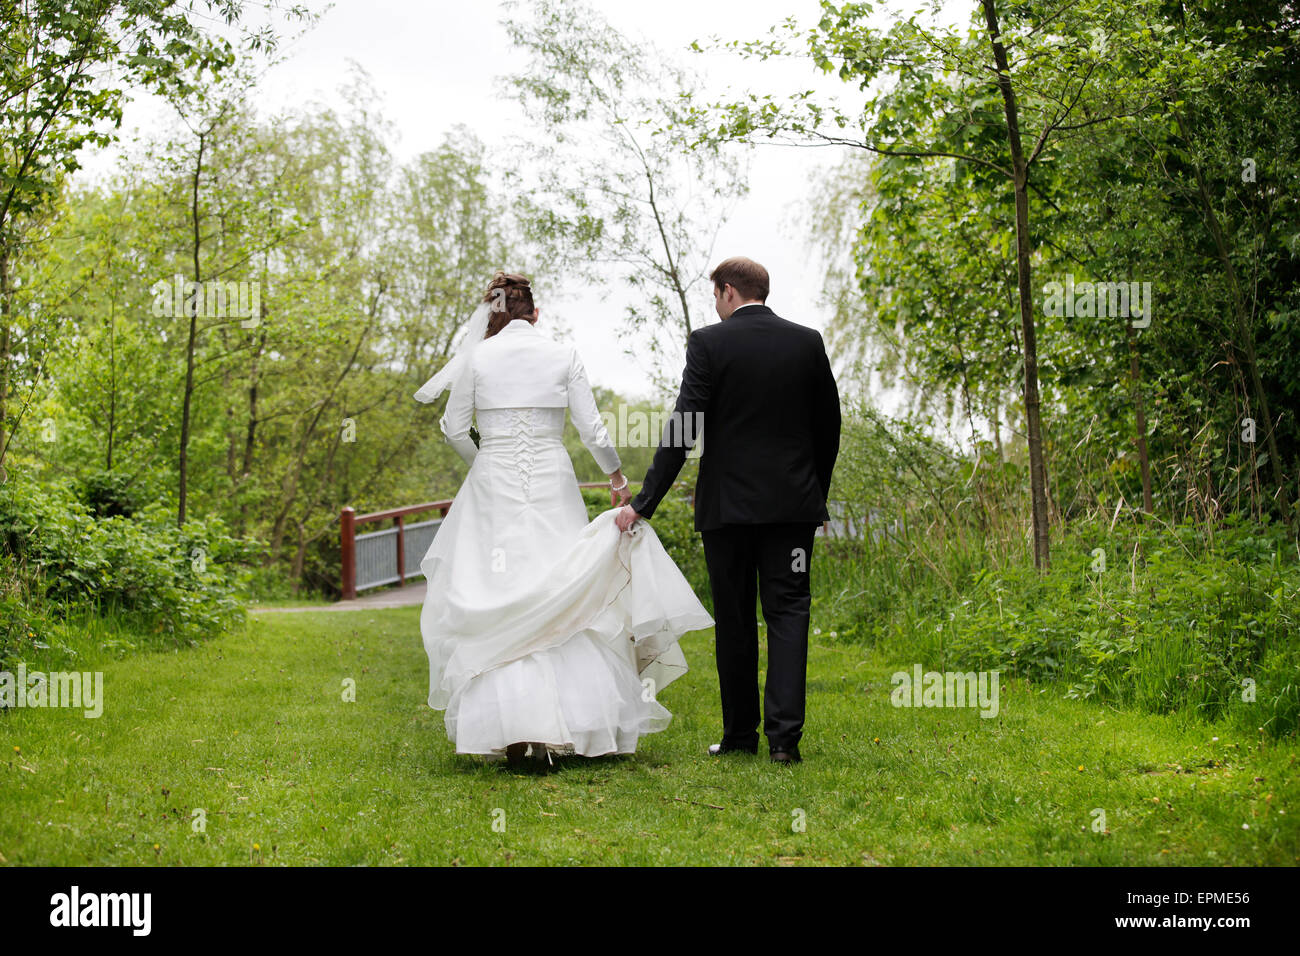 Une mariée dans une robe de mariée blanche à marcher avec son époux dans la nature Banque D'Images